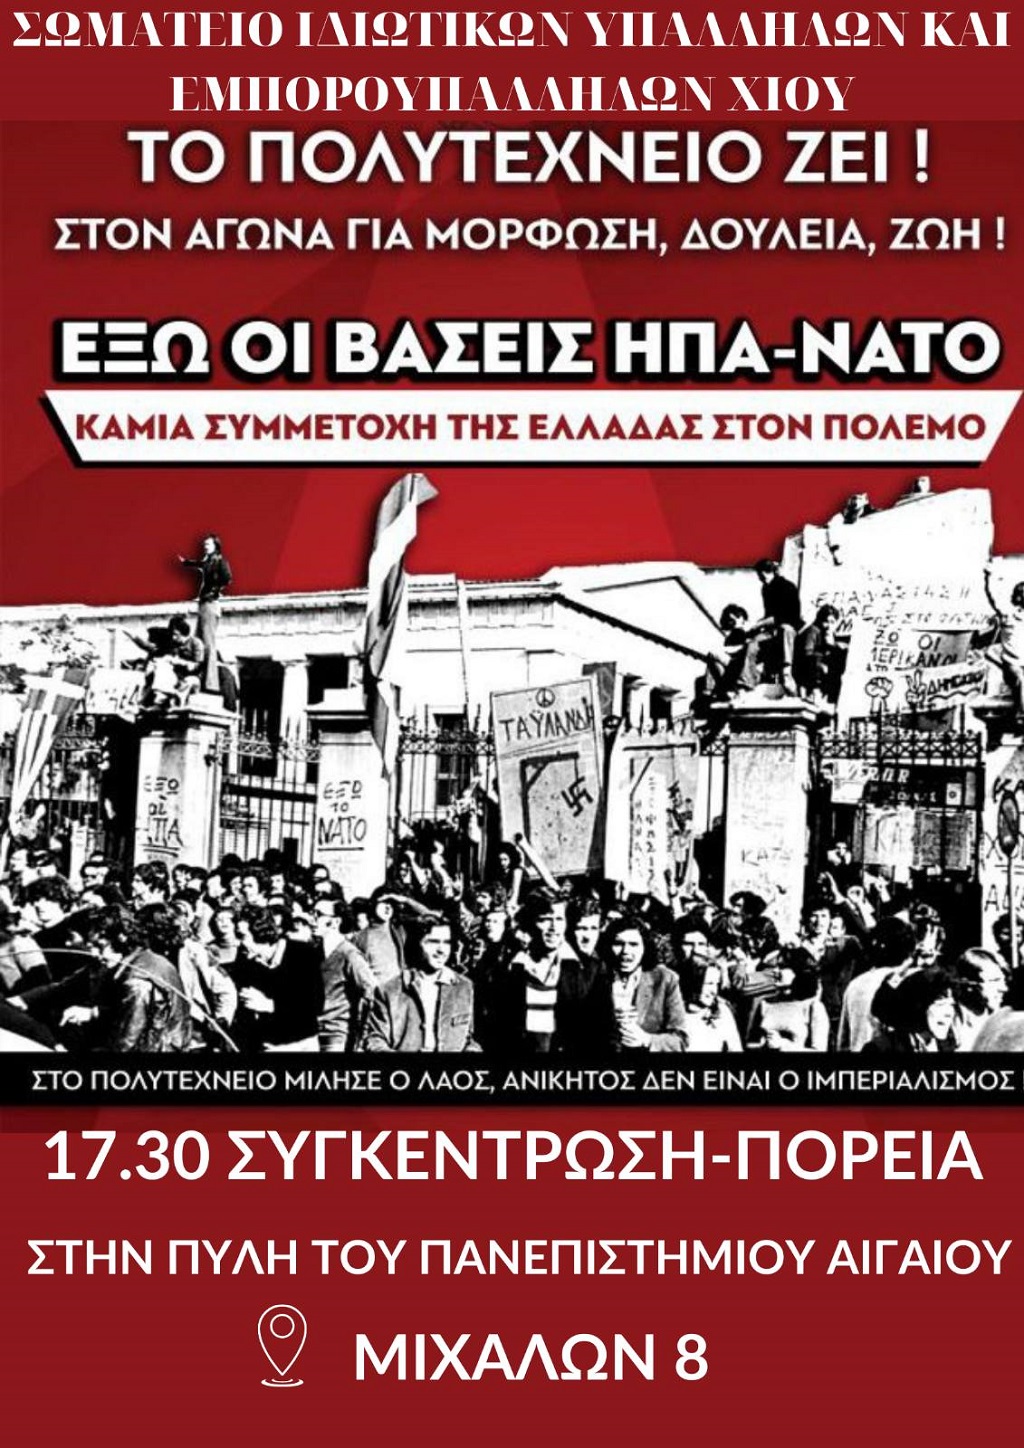 Χίος: Συγκέντρωση Σωματείων για το Πολυτεχνείο